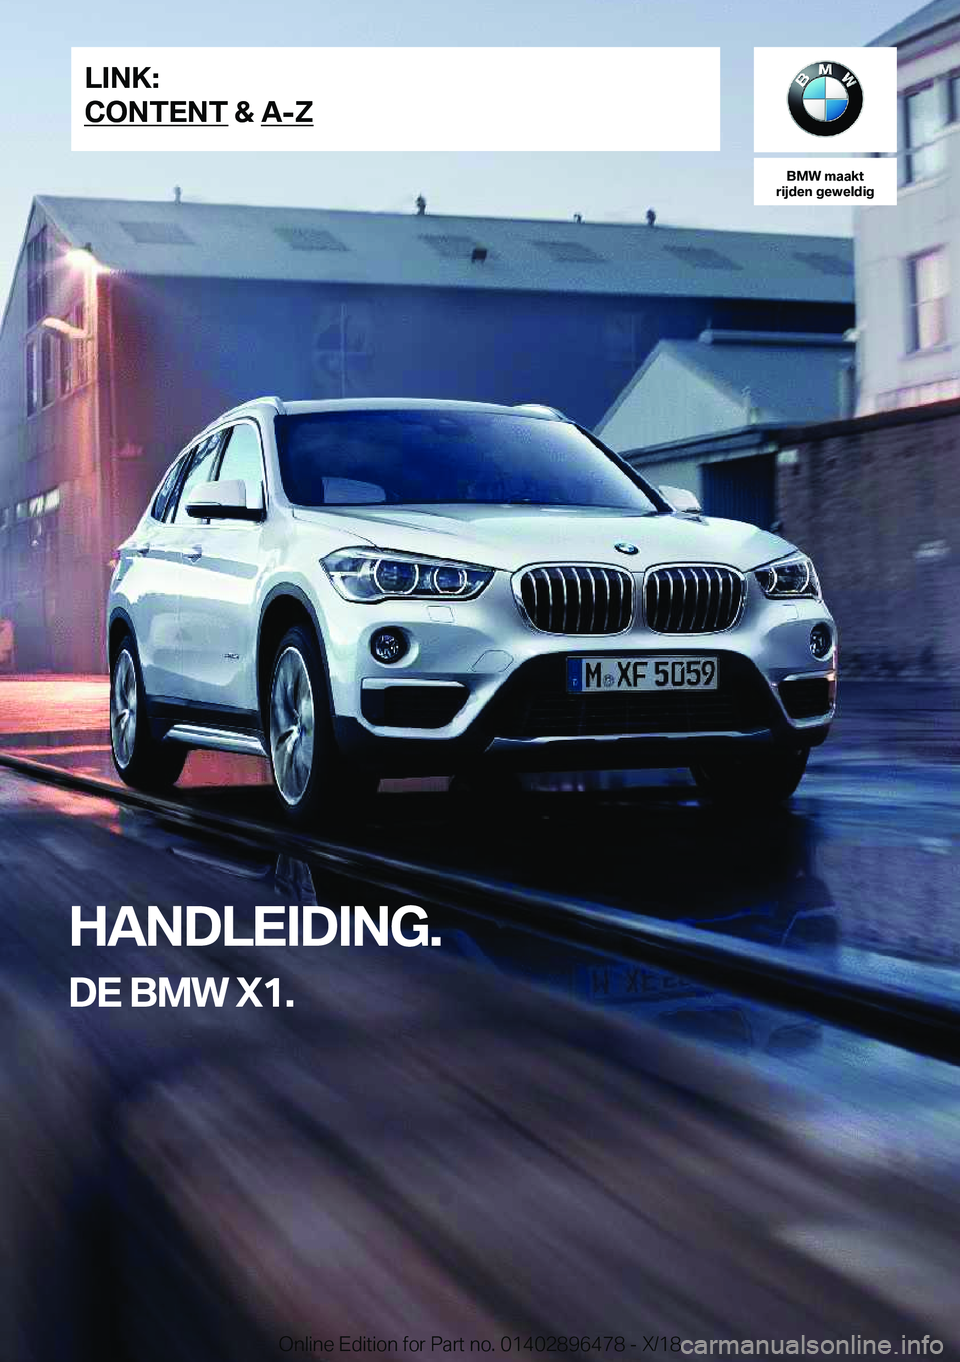 BMW X1 2019  Instructieboekjes (in Dutch) �B�M�W��m�a�a�k�t
�r�i�j�d�e�n��g�e�w�e�l�d�i�g
�H�A�N�D�L�E�I�D�I�N�G�.
�D�E��B�M�W��X�1�.�L�I�N�K�:
�C�O�N�T�E�N�T��&��A�-�Z�O�n�l�i�n�e��E�d�i�t�i�o�n��f�o�r��P�a�r�t��n�o�.��0�1�4�0�2�8